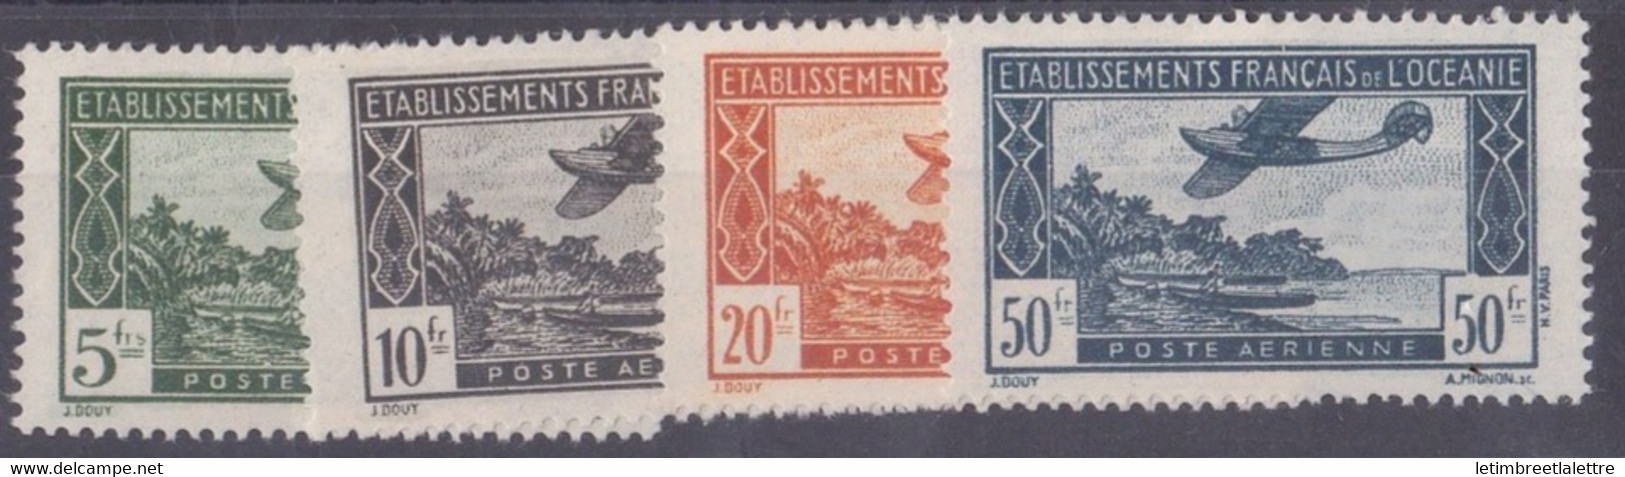 Océanie - Poste Aérienne - YT N° 14 à 17 ** - Neuf Sans Charnière - 1944 - Airmail